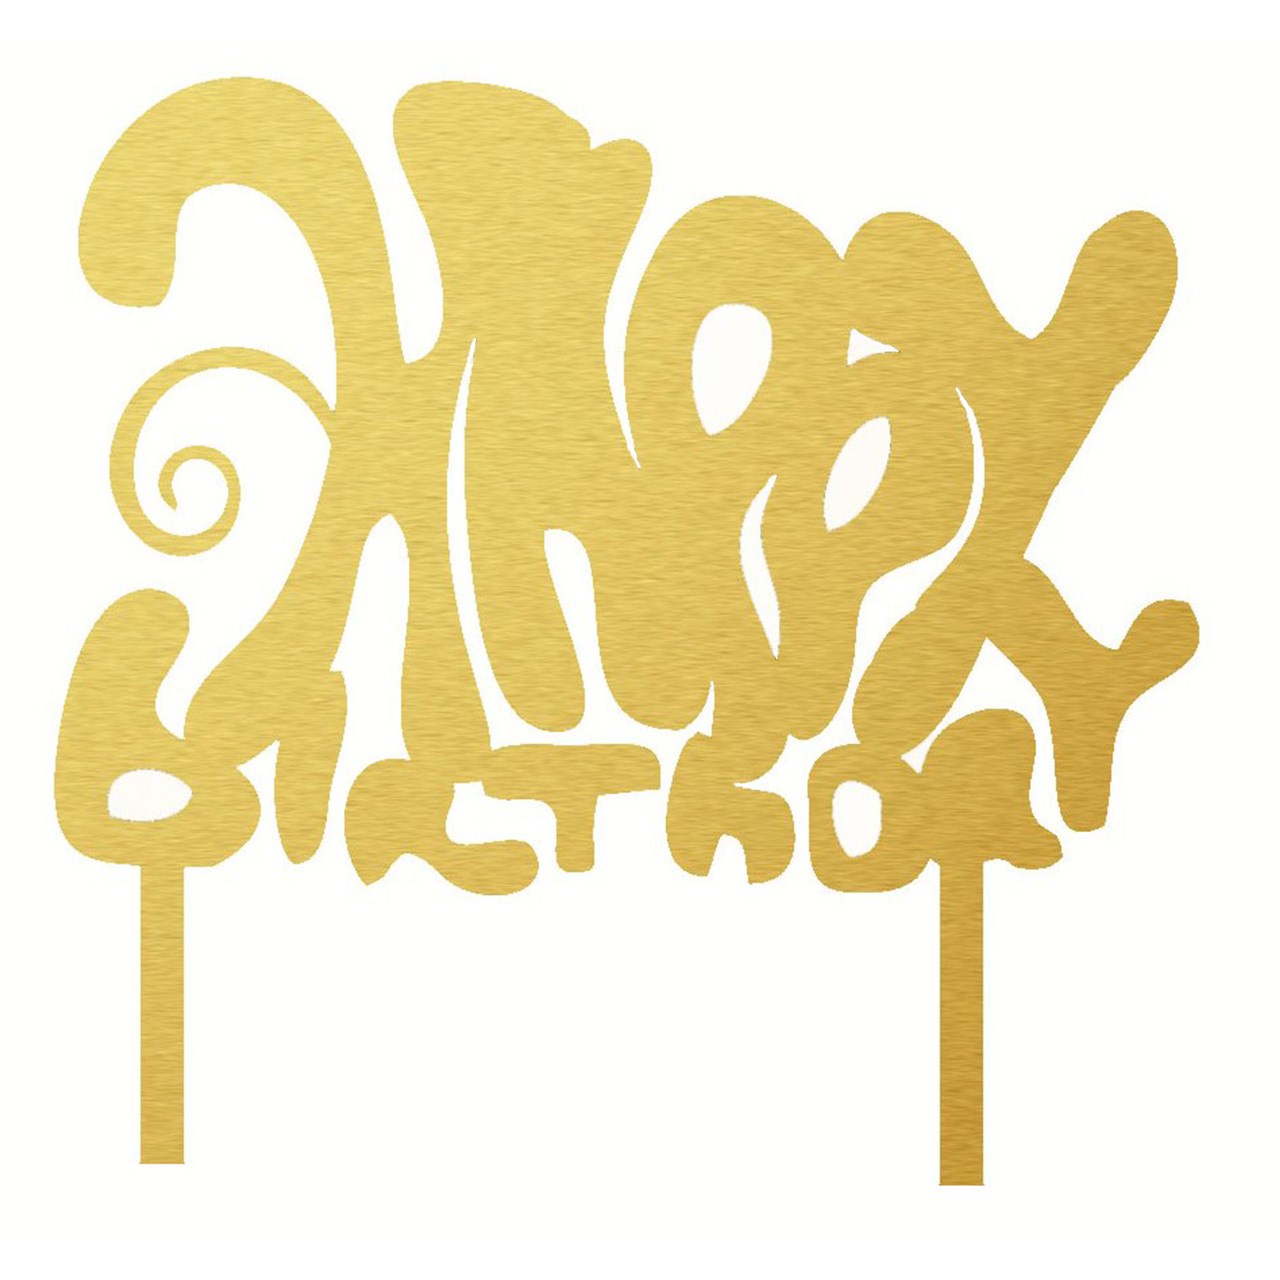 تاپر کیک جشنکده مدل Happy Birthday کد 3